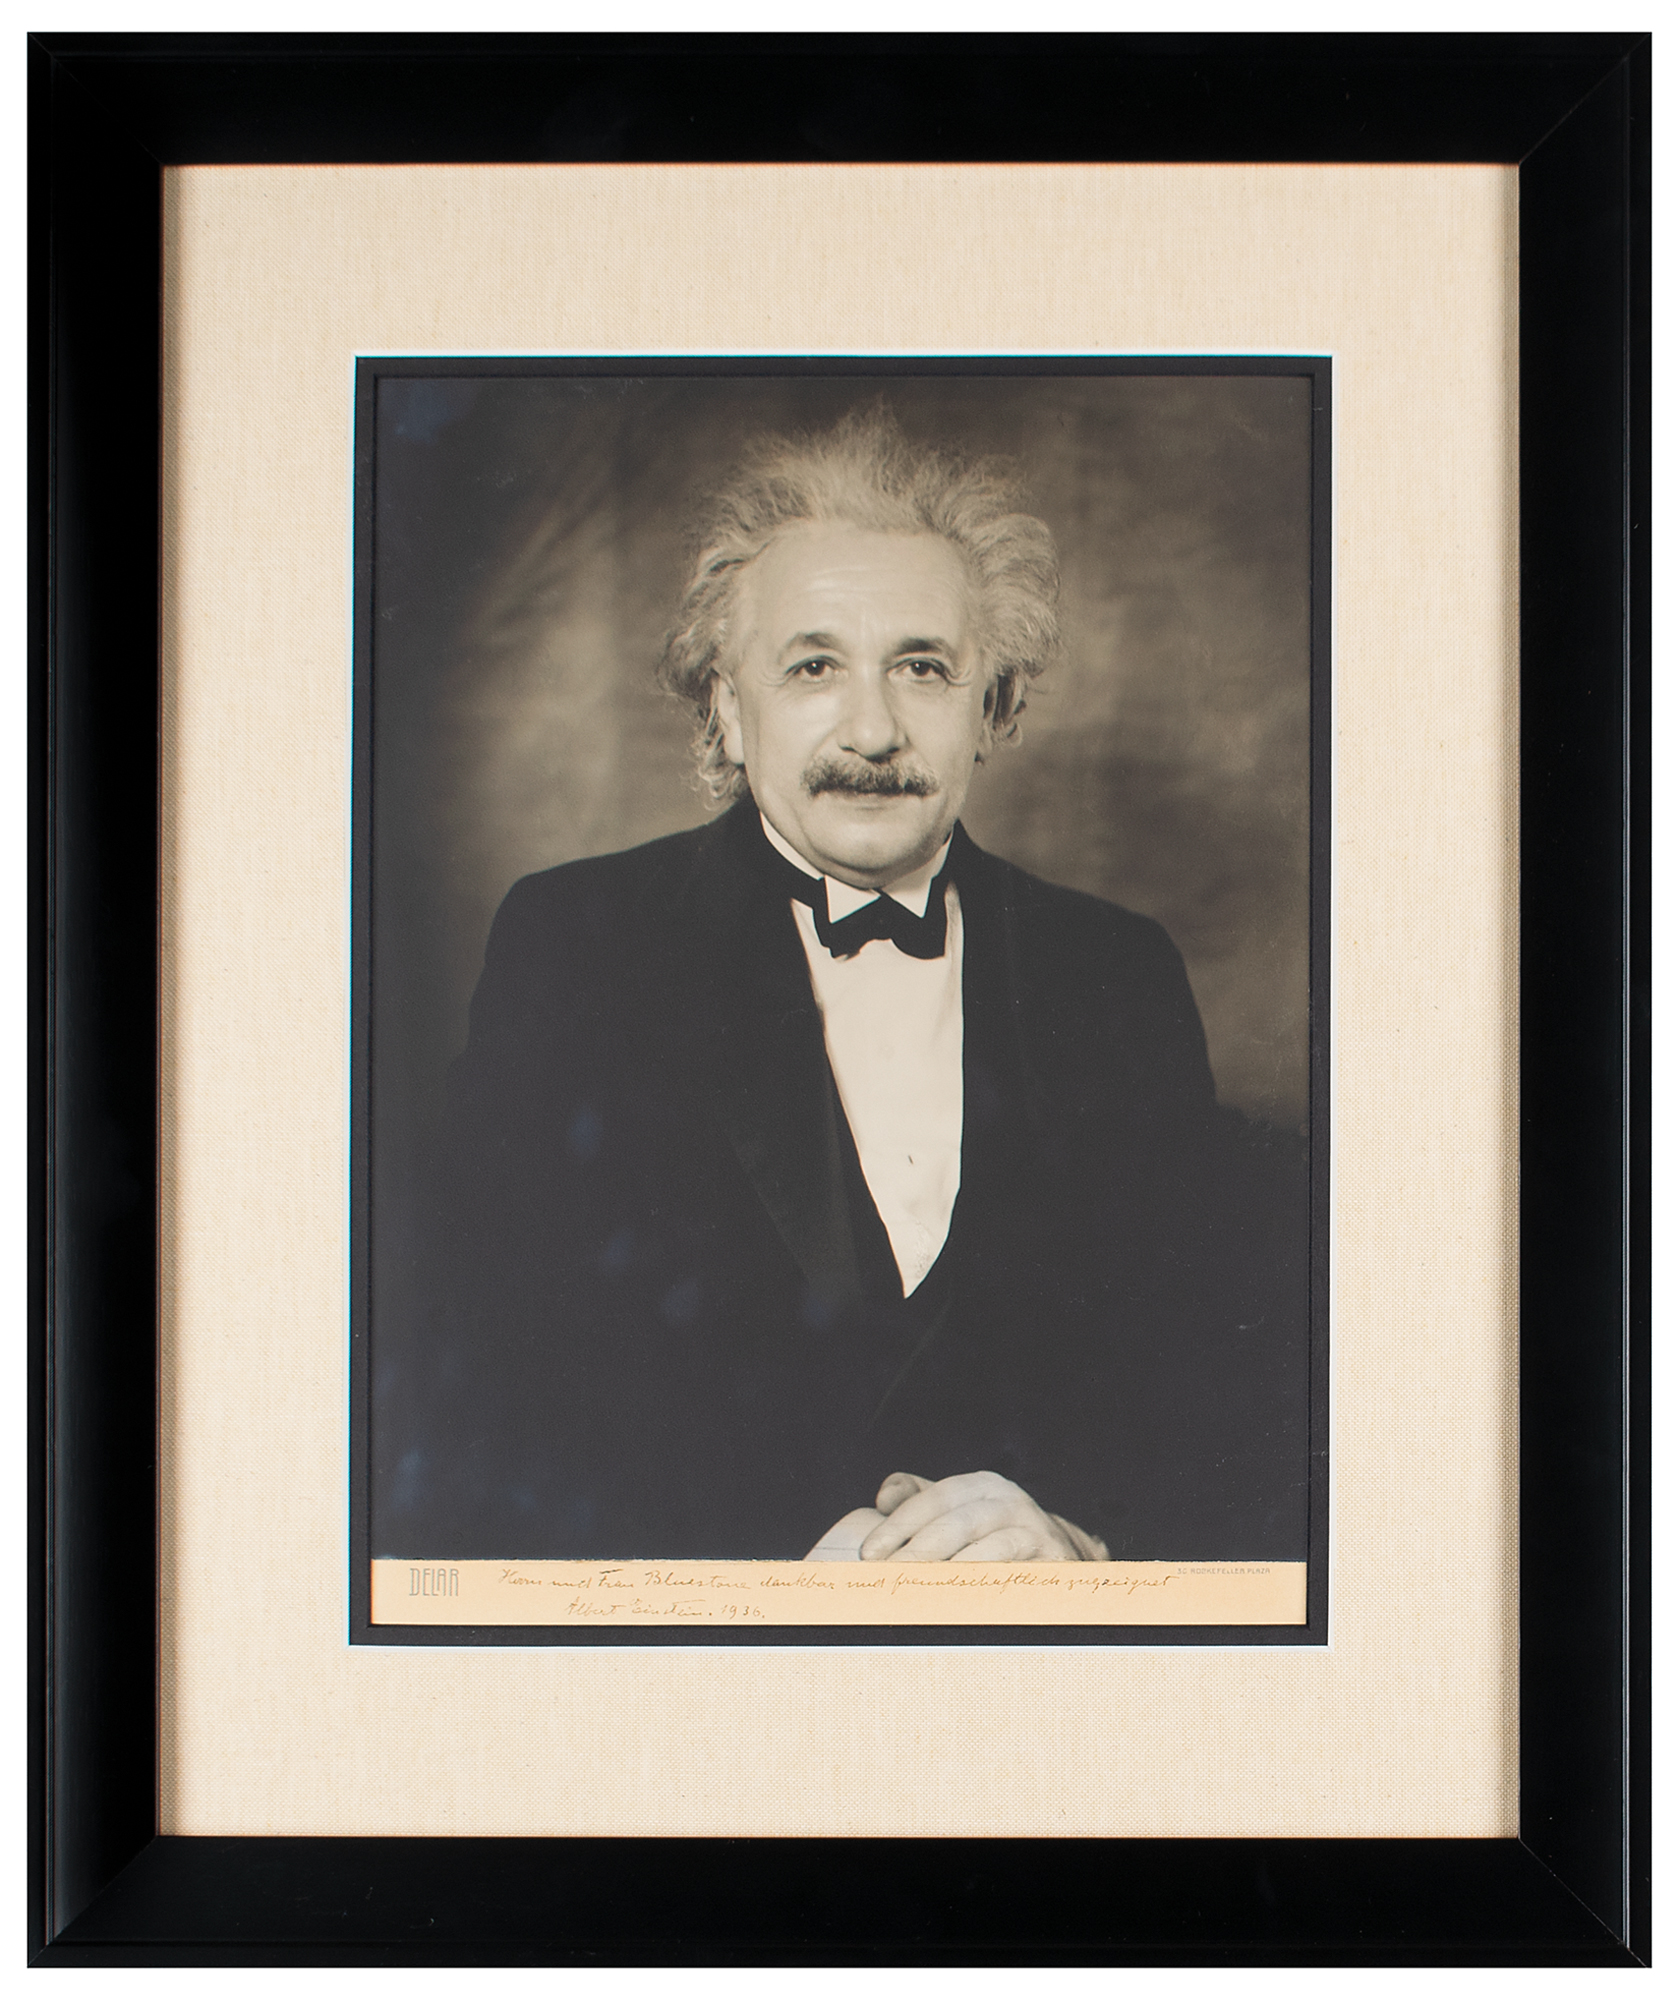 Albert Einstein Signed Photograph Rr Auction